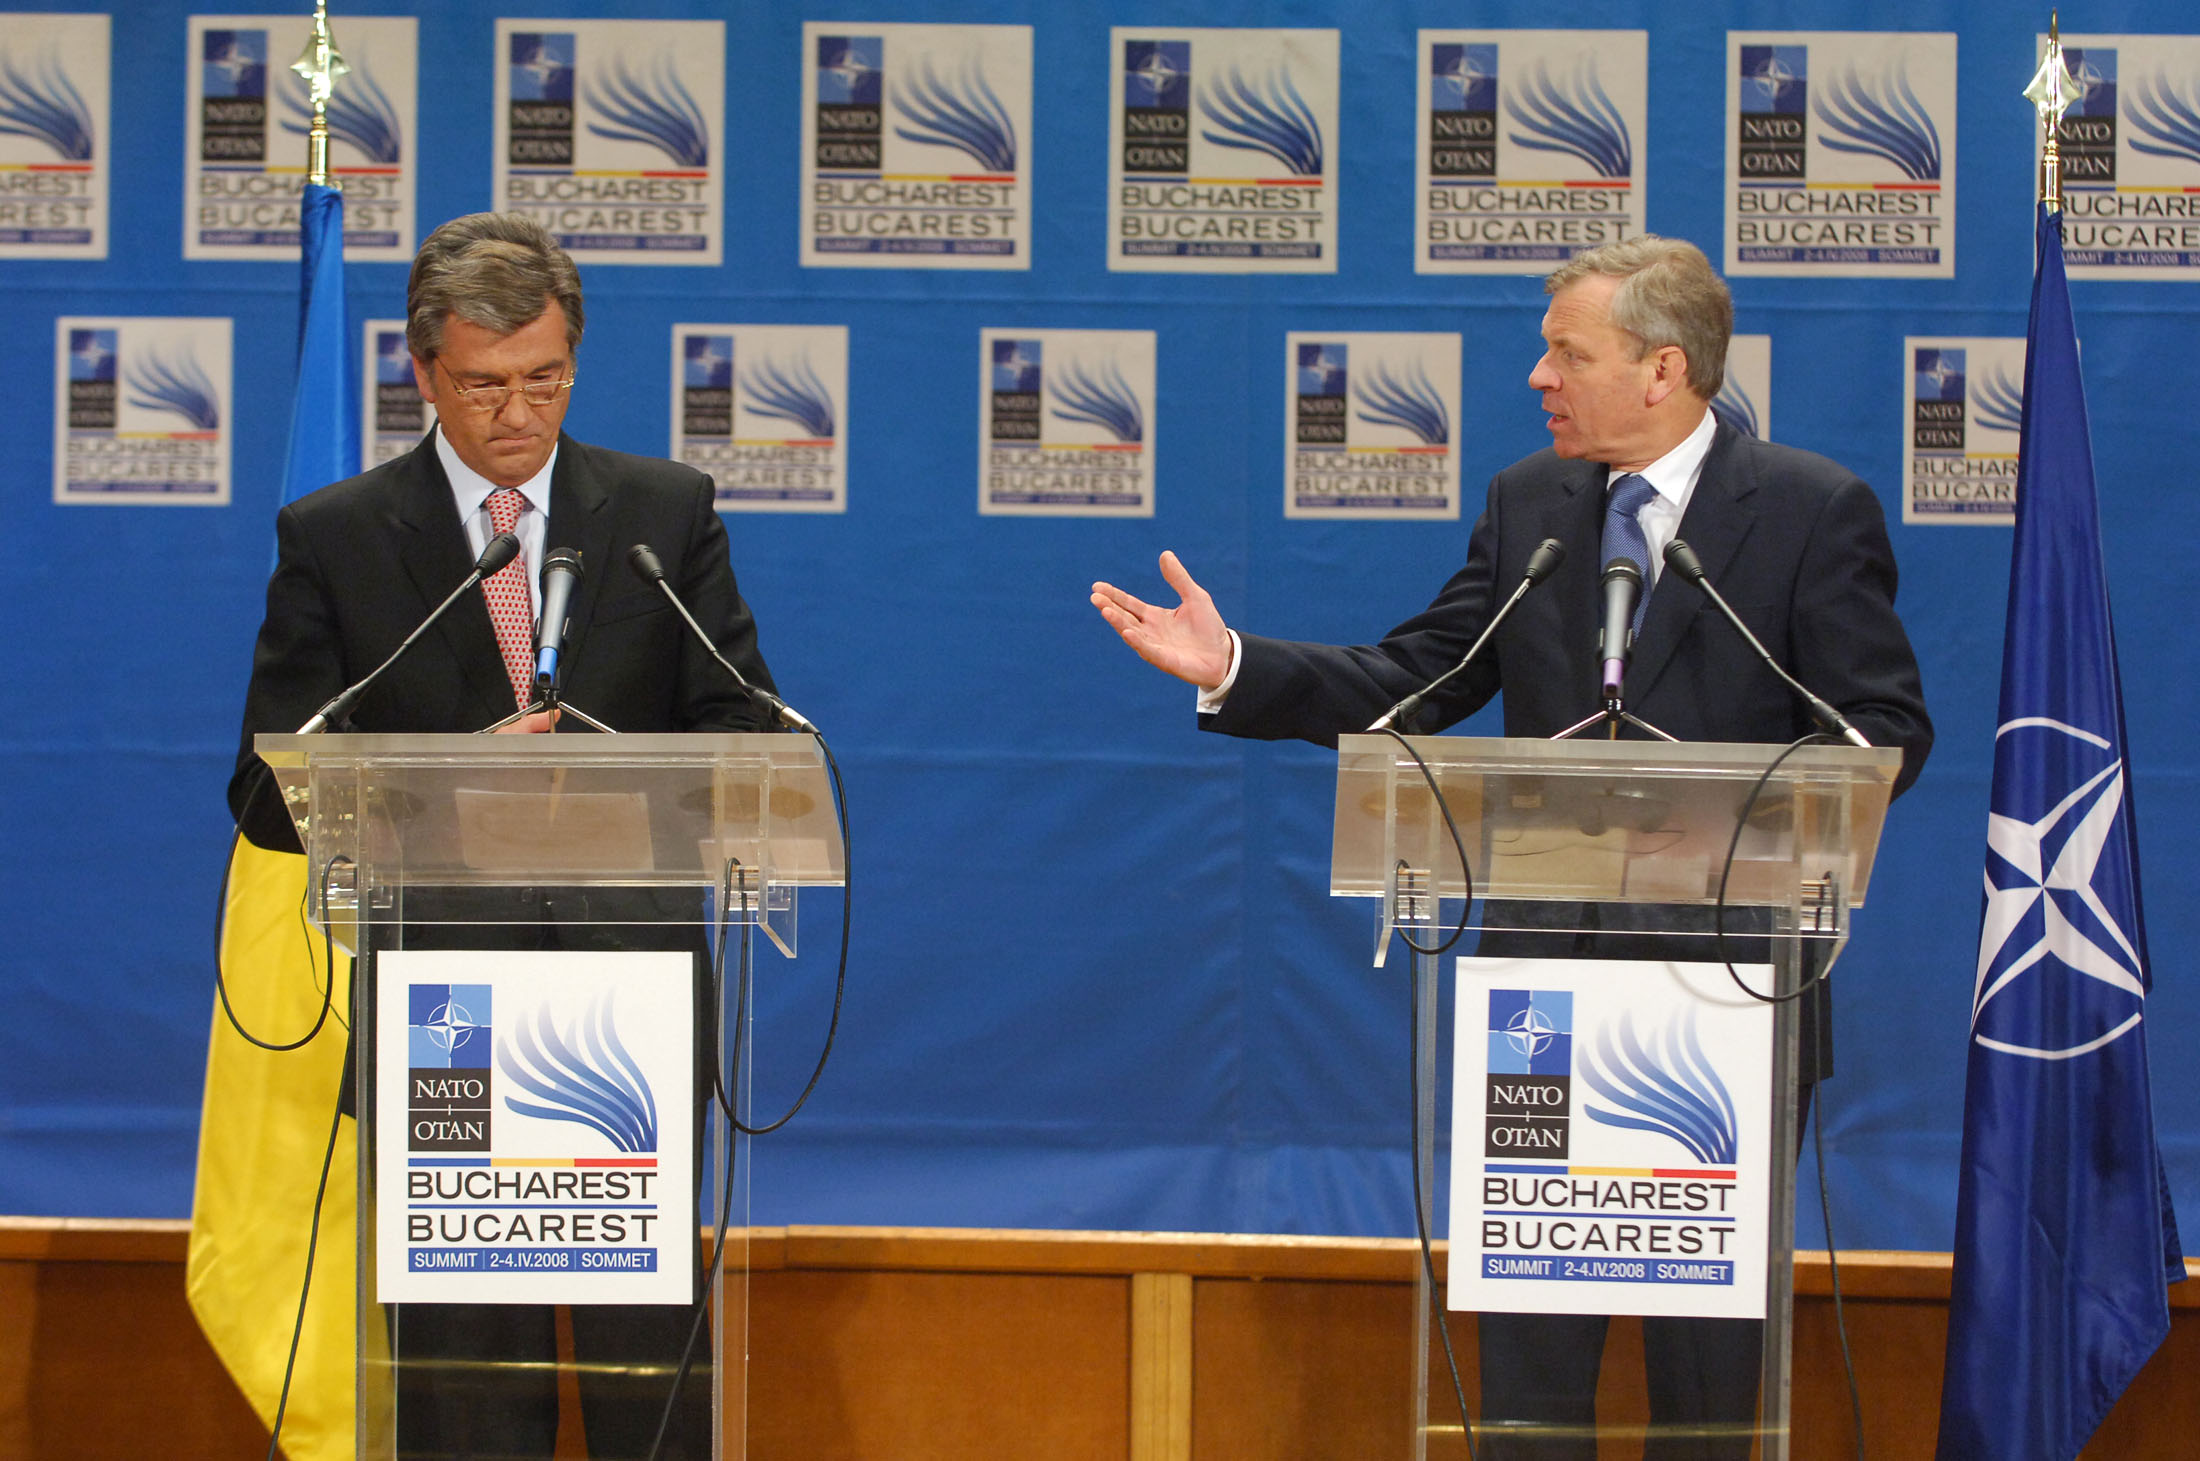 From left to right: Victor Yuschenko, President of Ukraine and NATO Secretary General Jaap de Hoop Scheffer